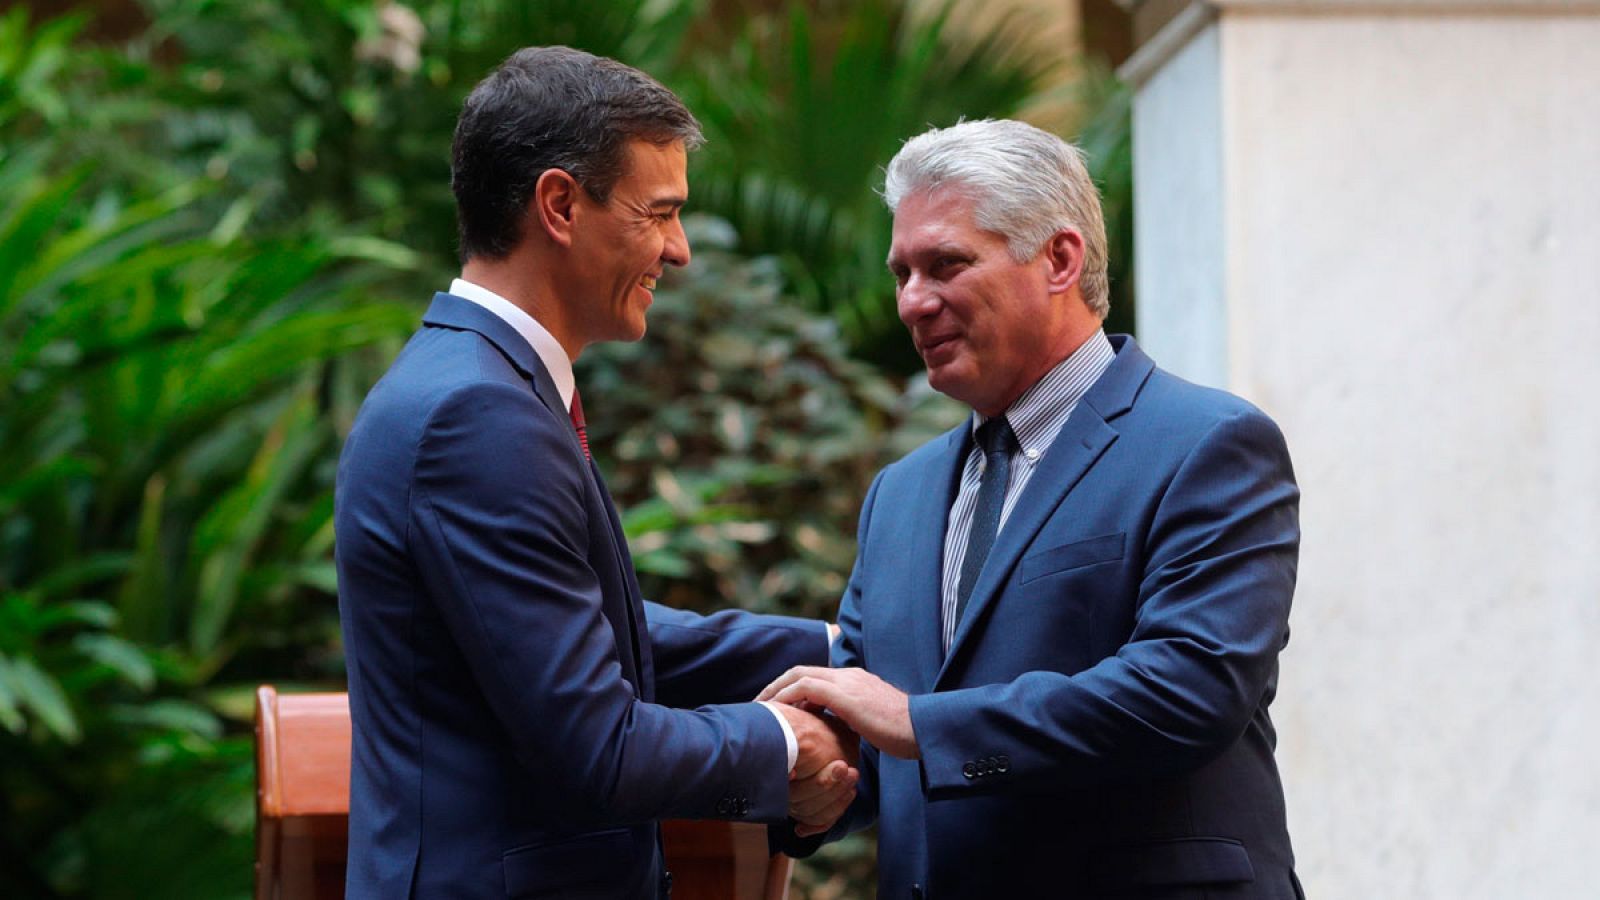 Pedro Sánchez le da la mano al presidente de Cuba durante su visita oficial de dos días a la Isla